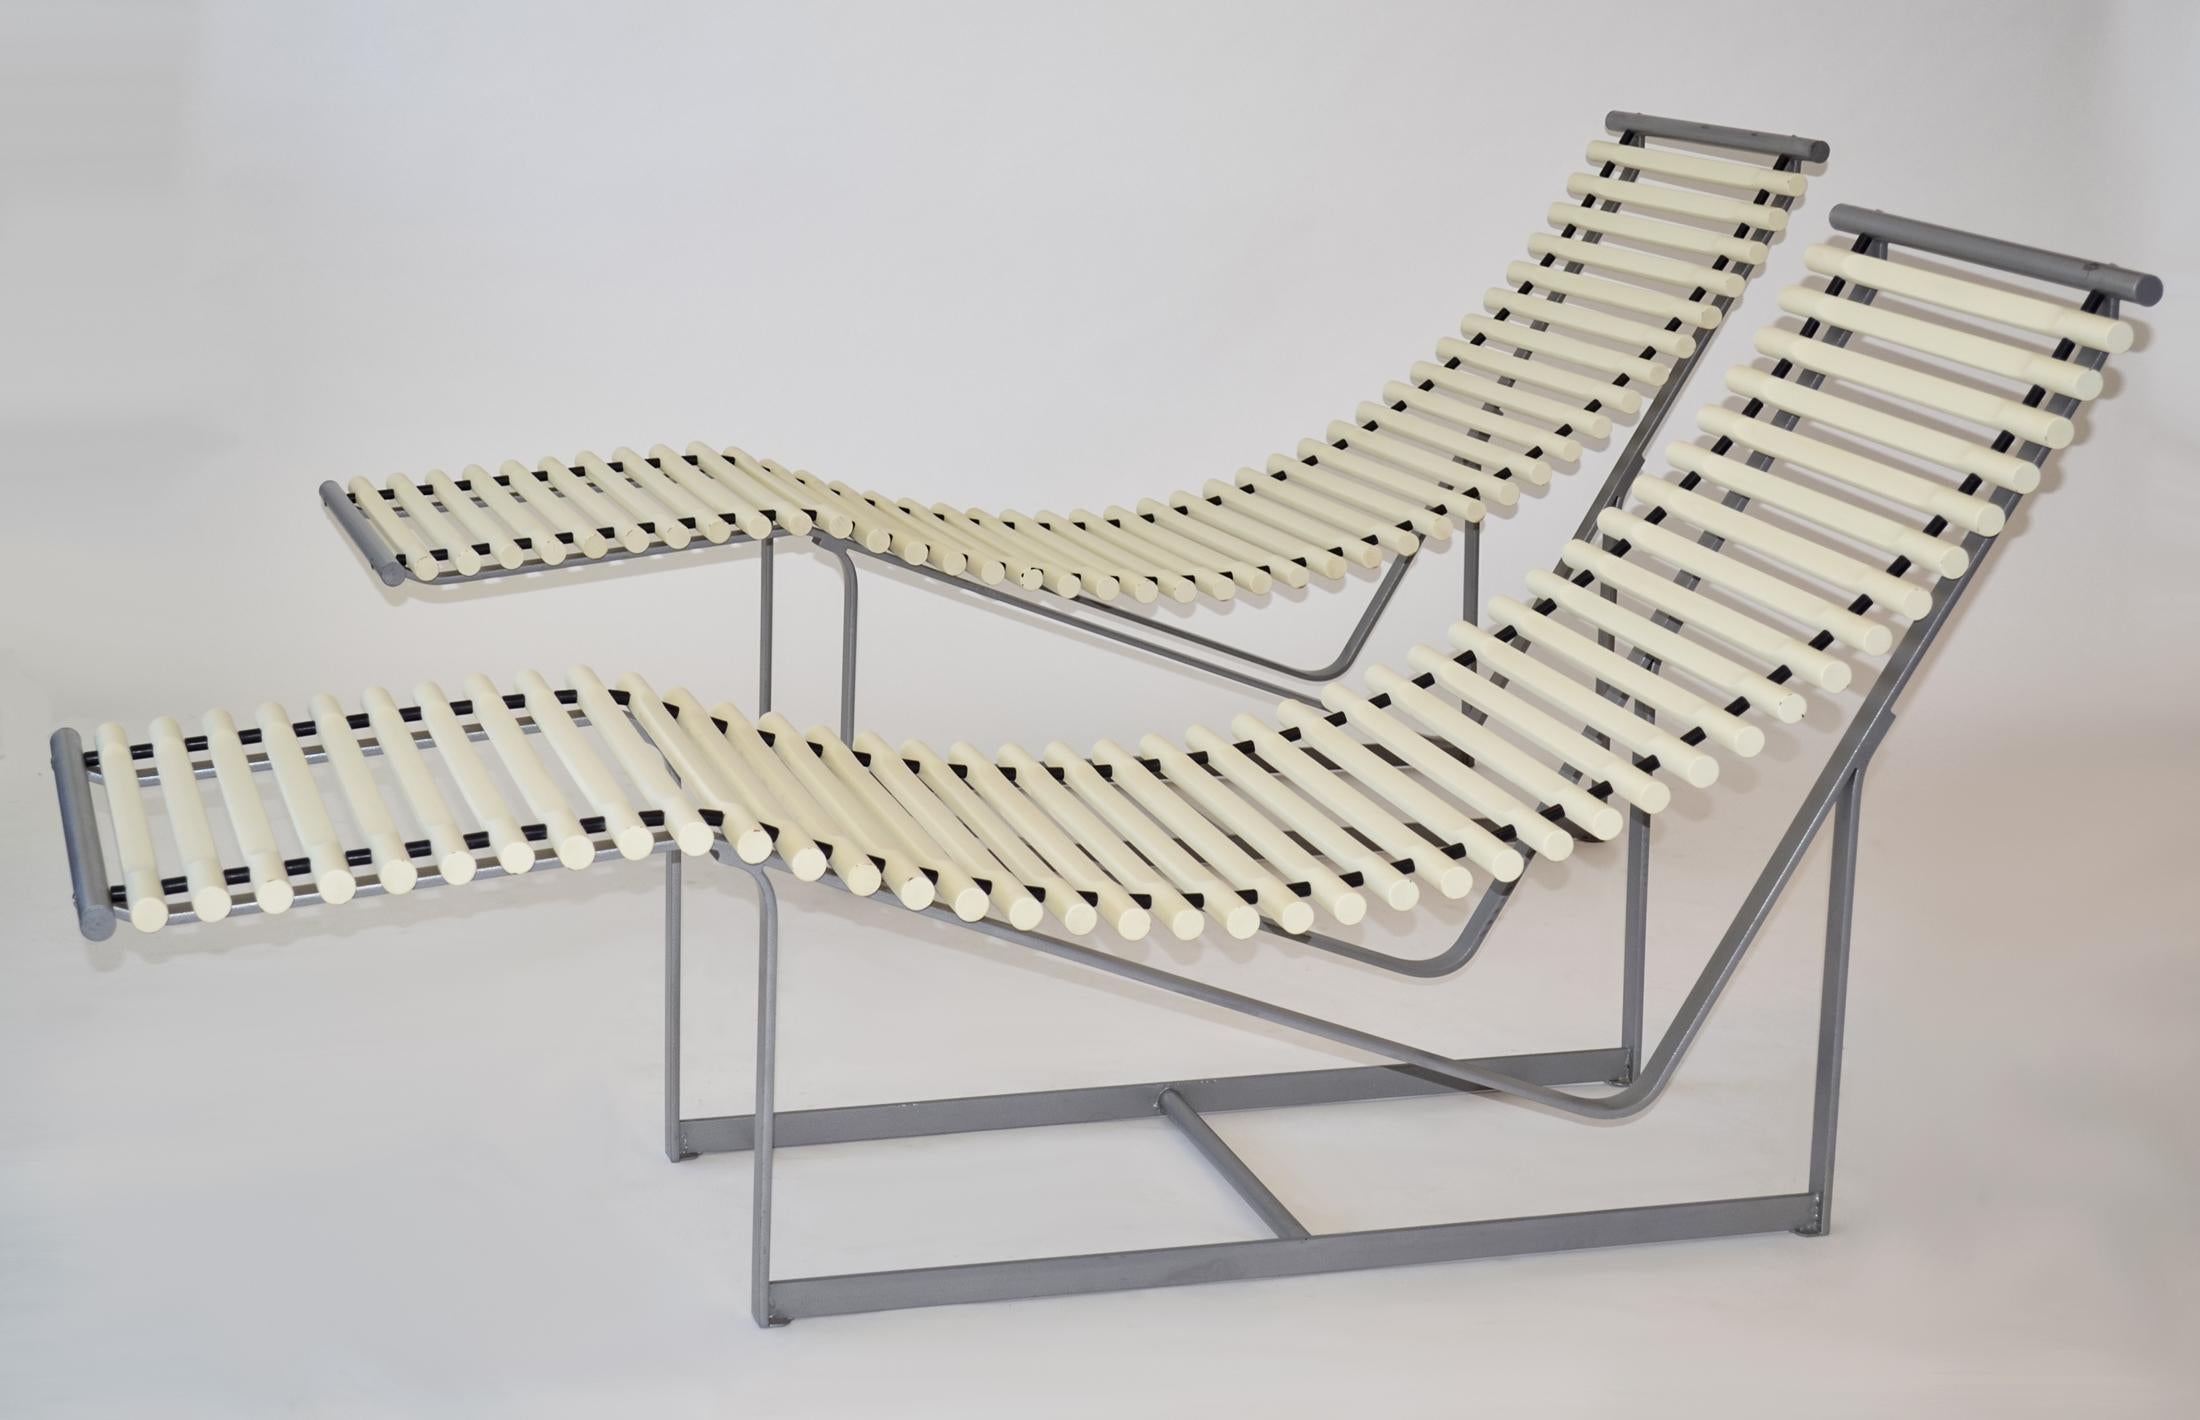 Paar Loungesessel oder Sessel mit Spinnenrückenlehne von Peter Strassl, Deutschland 1978

Dieses 1978 von Peter Strassl in Deutschland entworfene Paar Chaiselounge-Sessel zeichnet sich durch seine auffallende skulpturale Form aus - die weiß